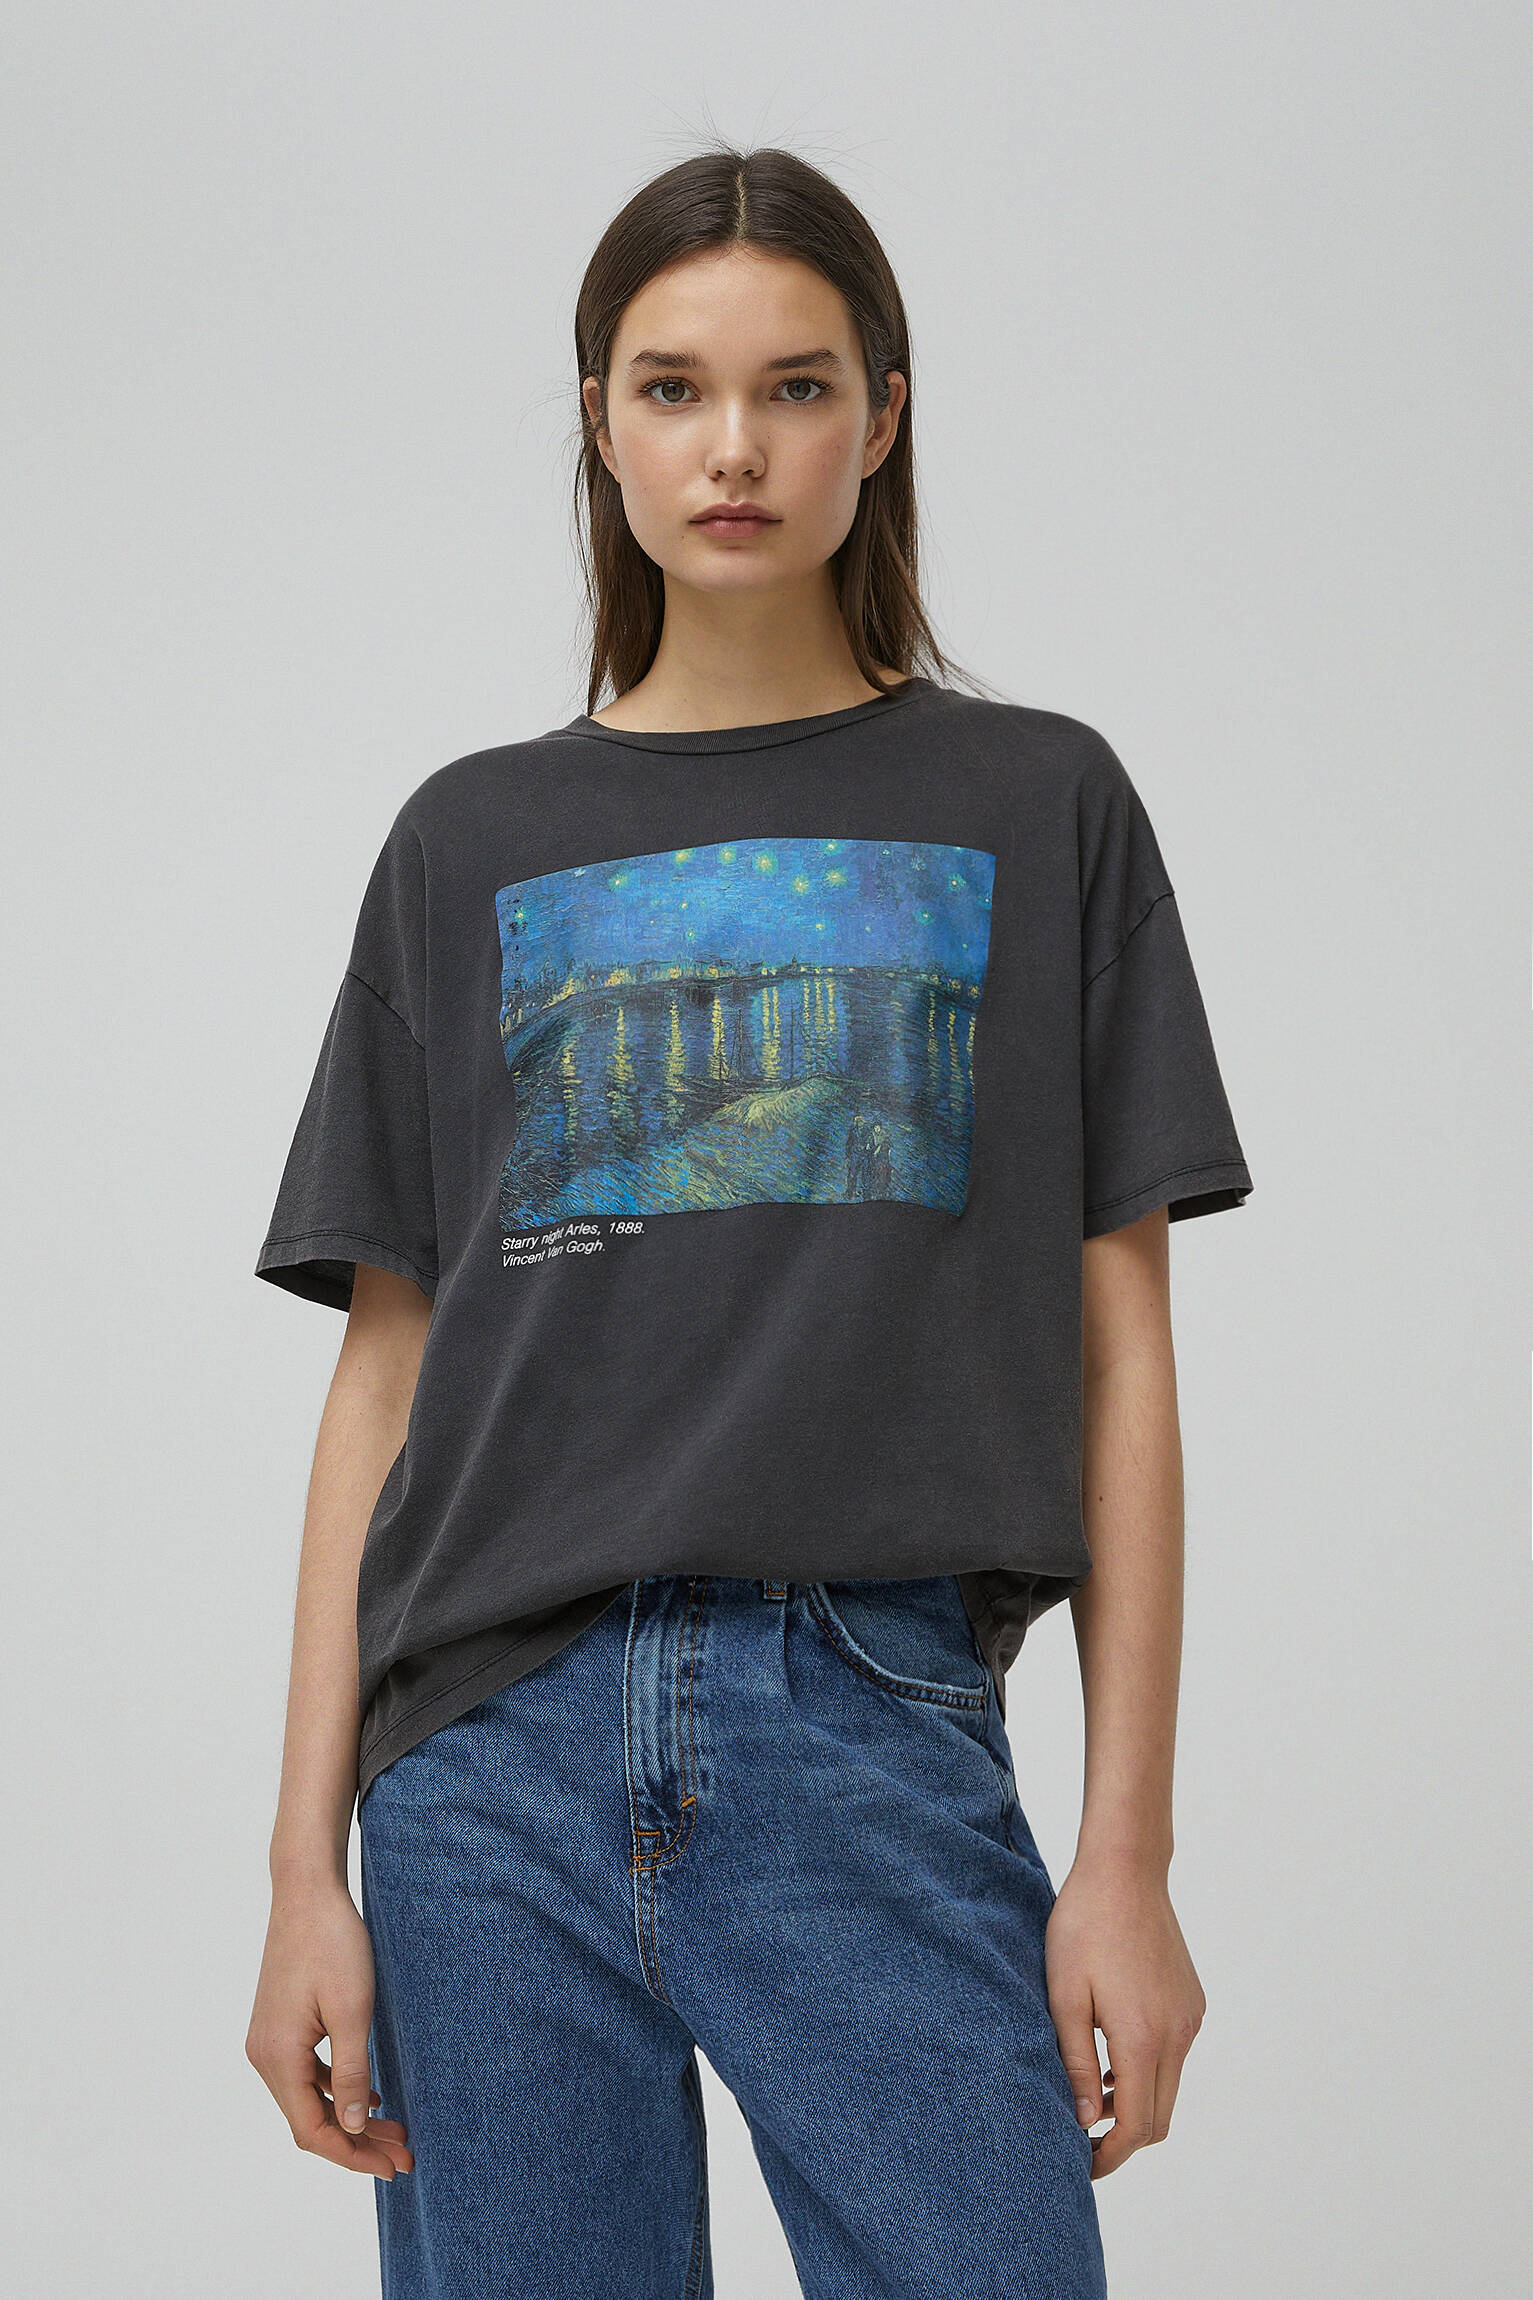 Pull & Bear - Van Gogh “Starry Night Over the Rhône” T-shirt